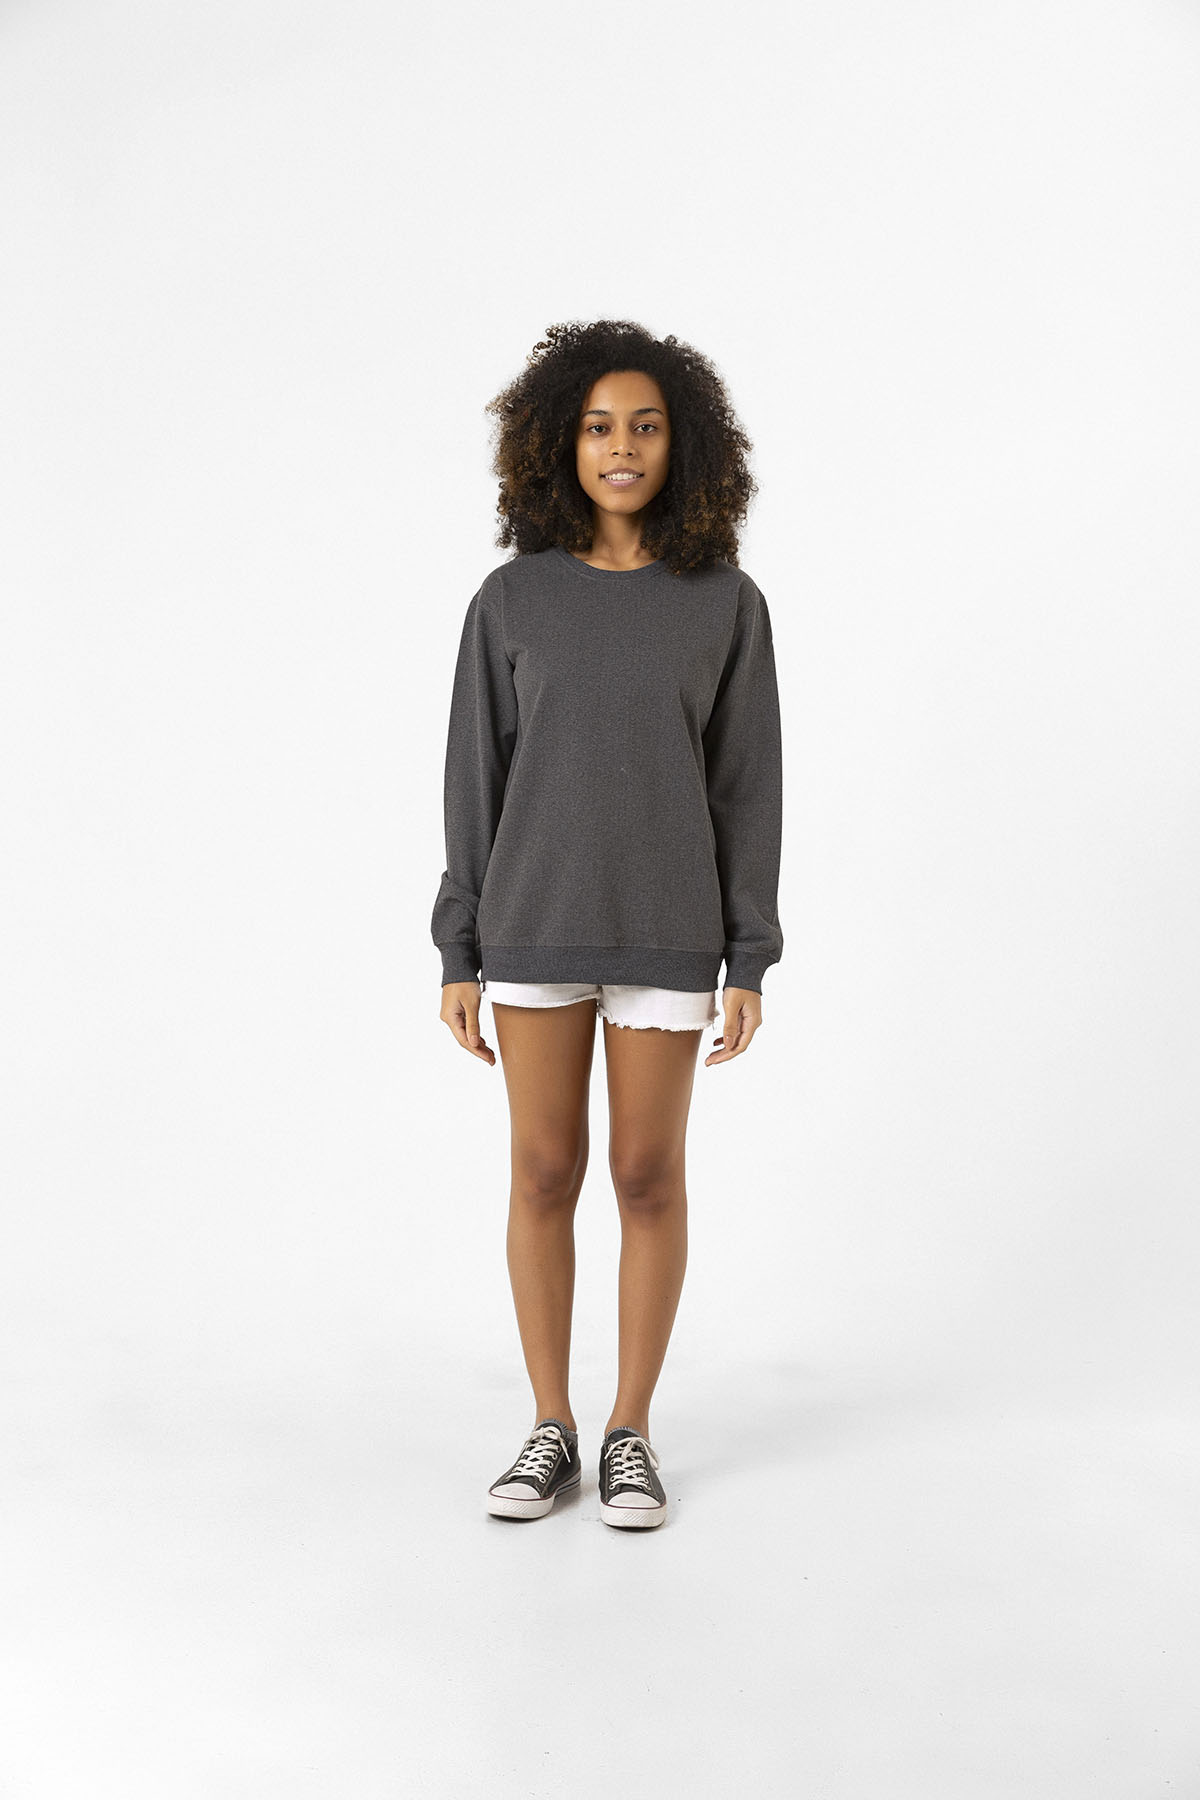 Füme Basic Kadın 2 iplik Sweatshirt